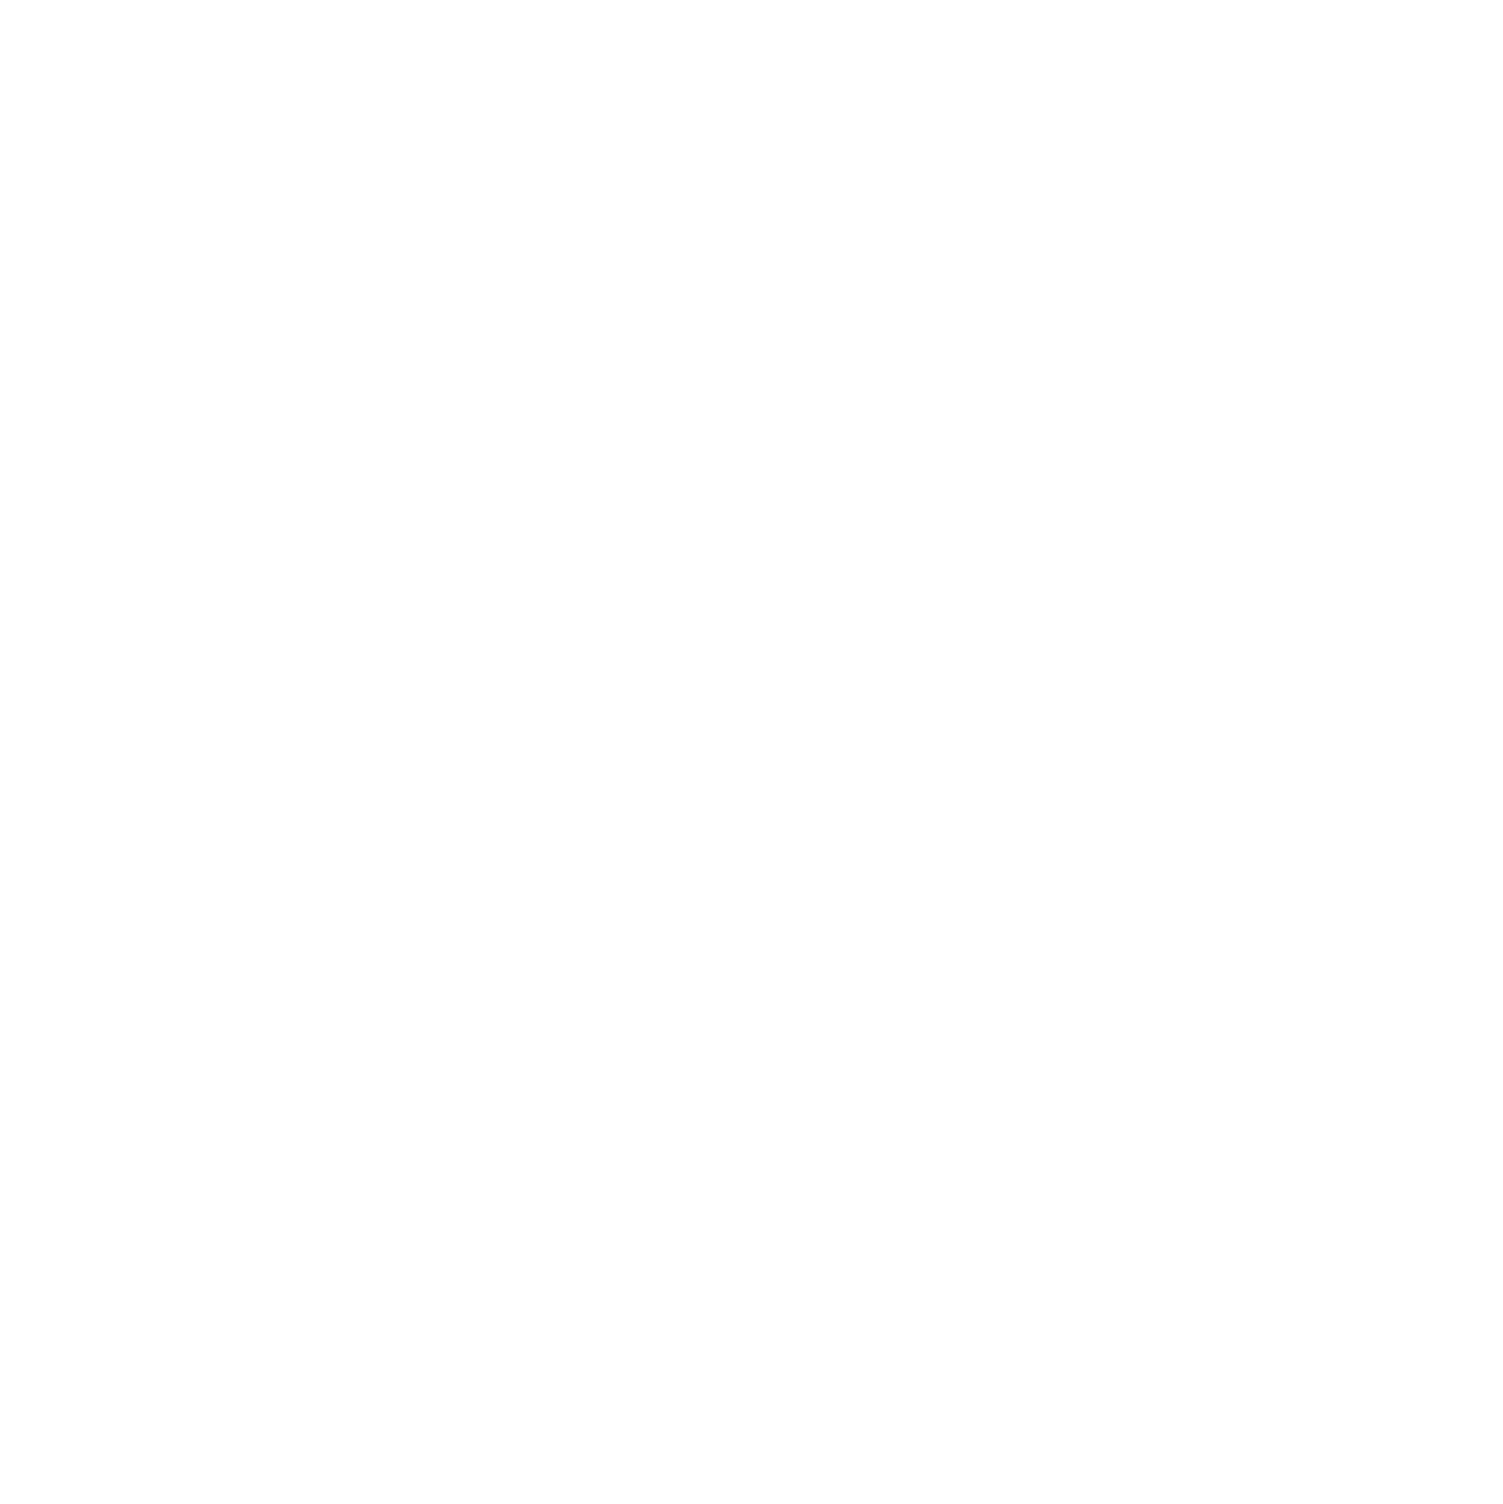 assm